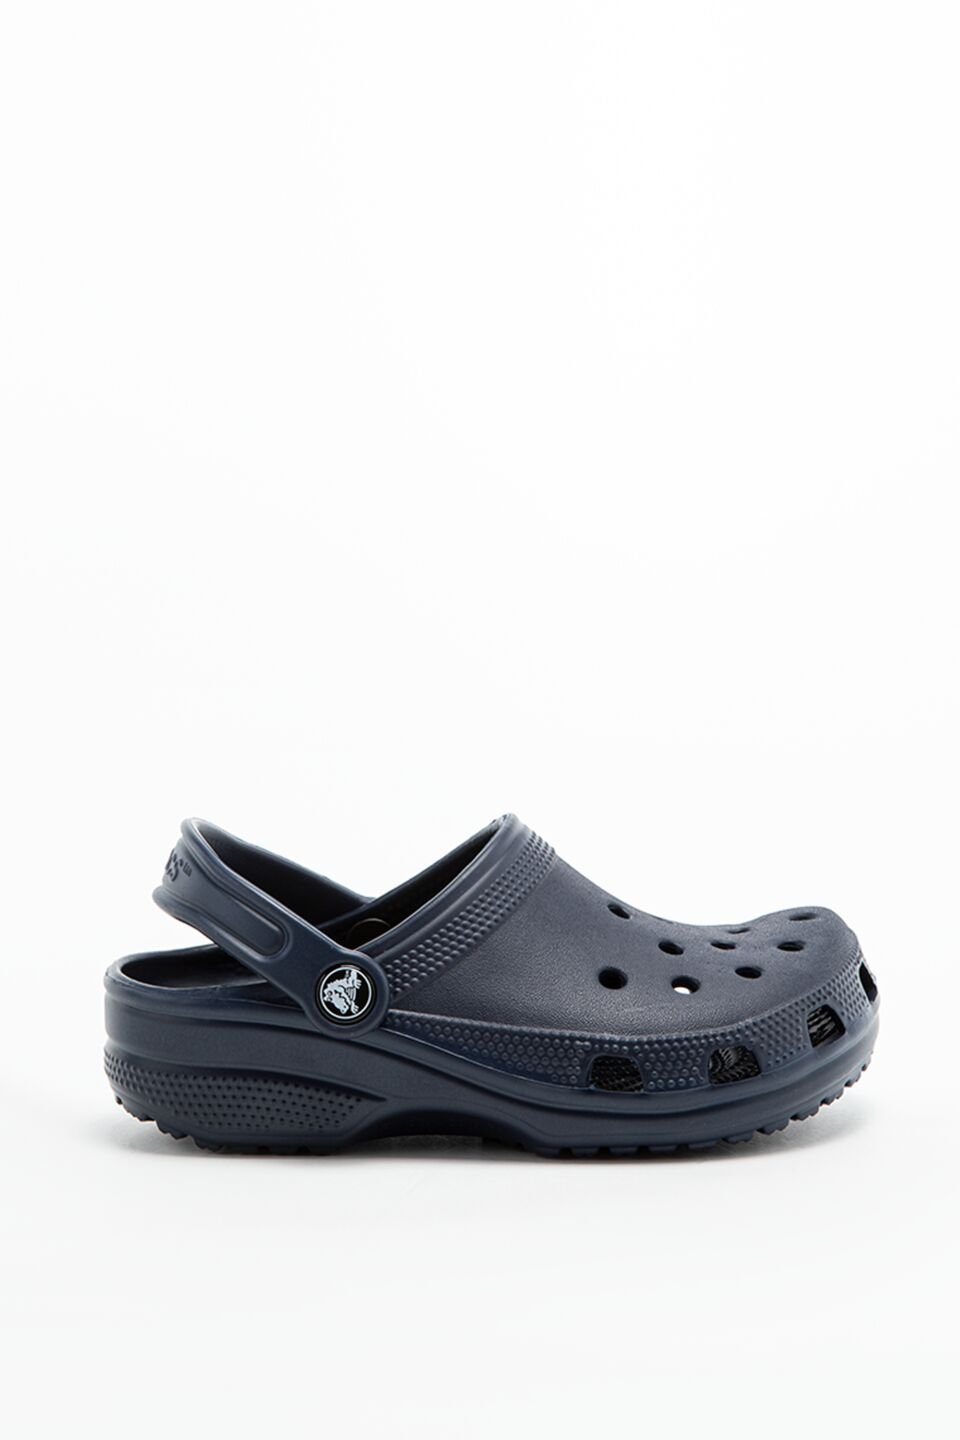 כפכפי Crocs לילדים Crocs Classic Clog - כחול כהה